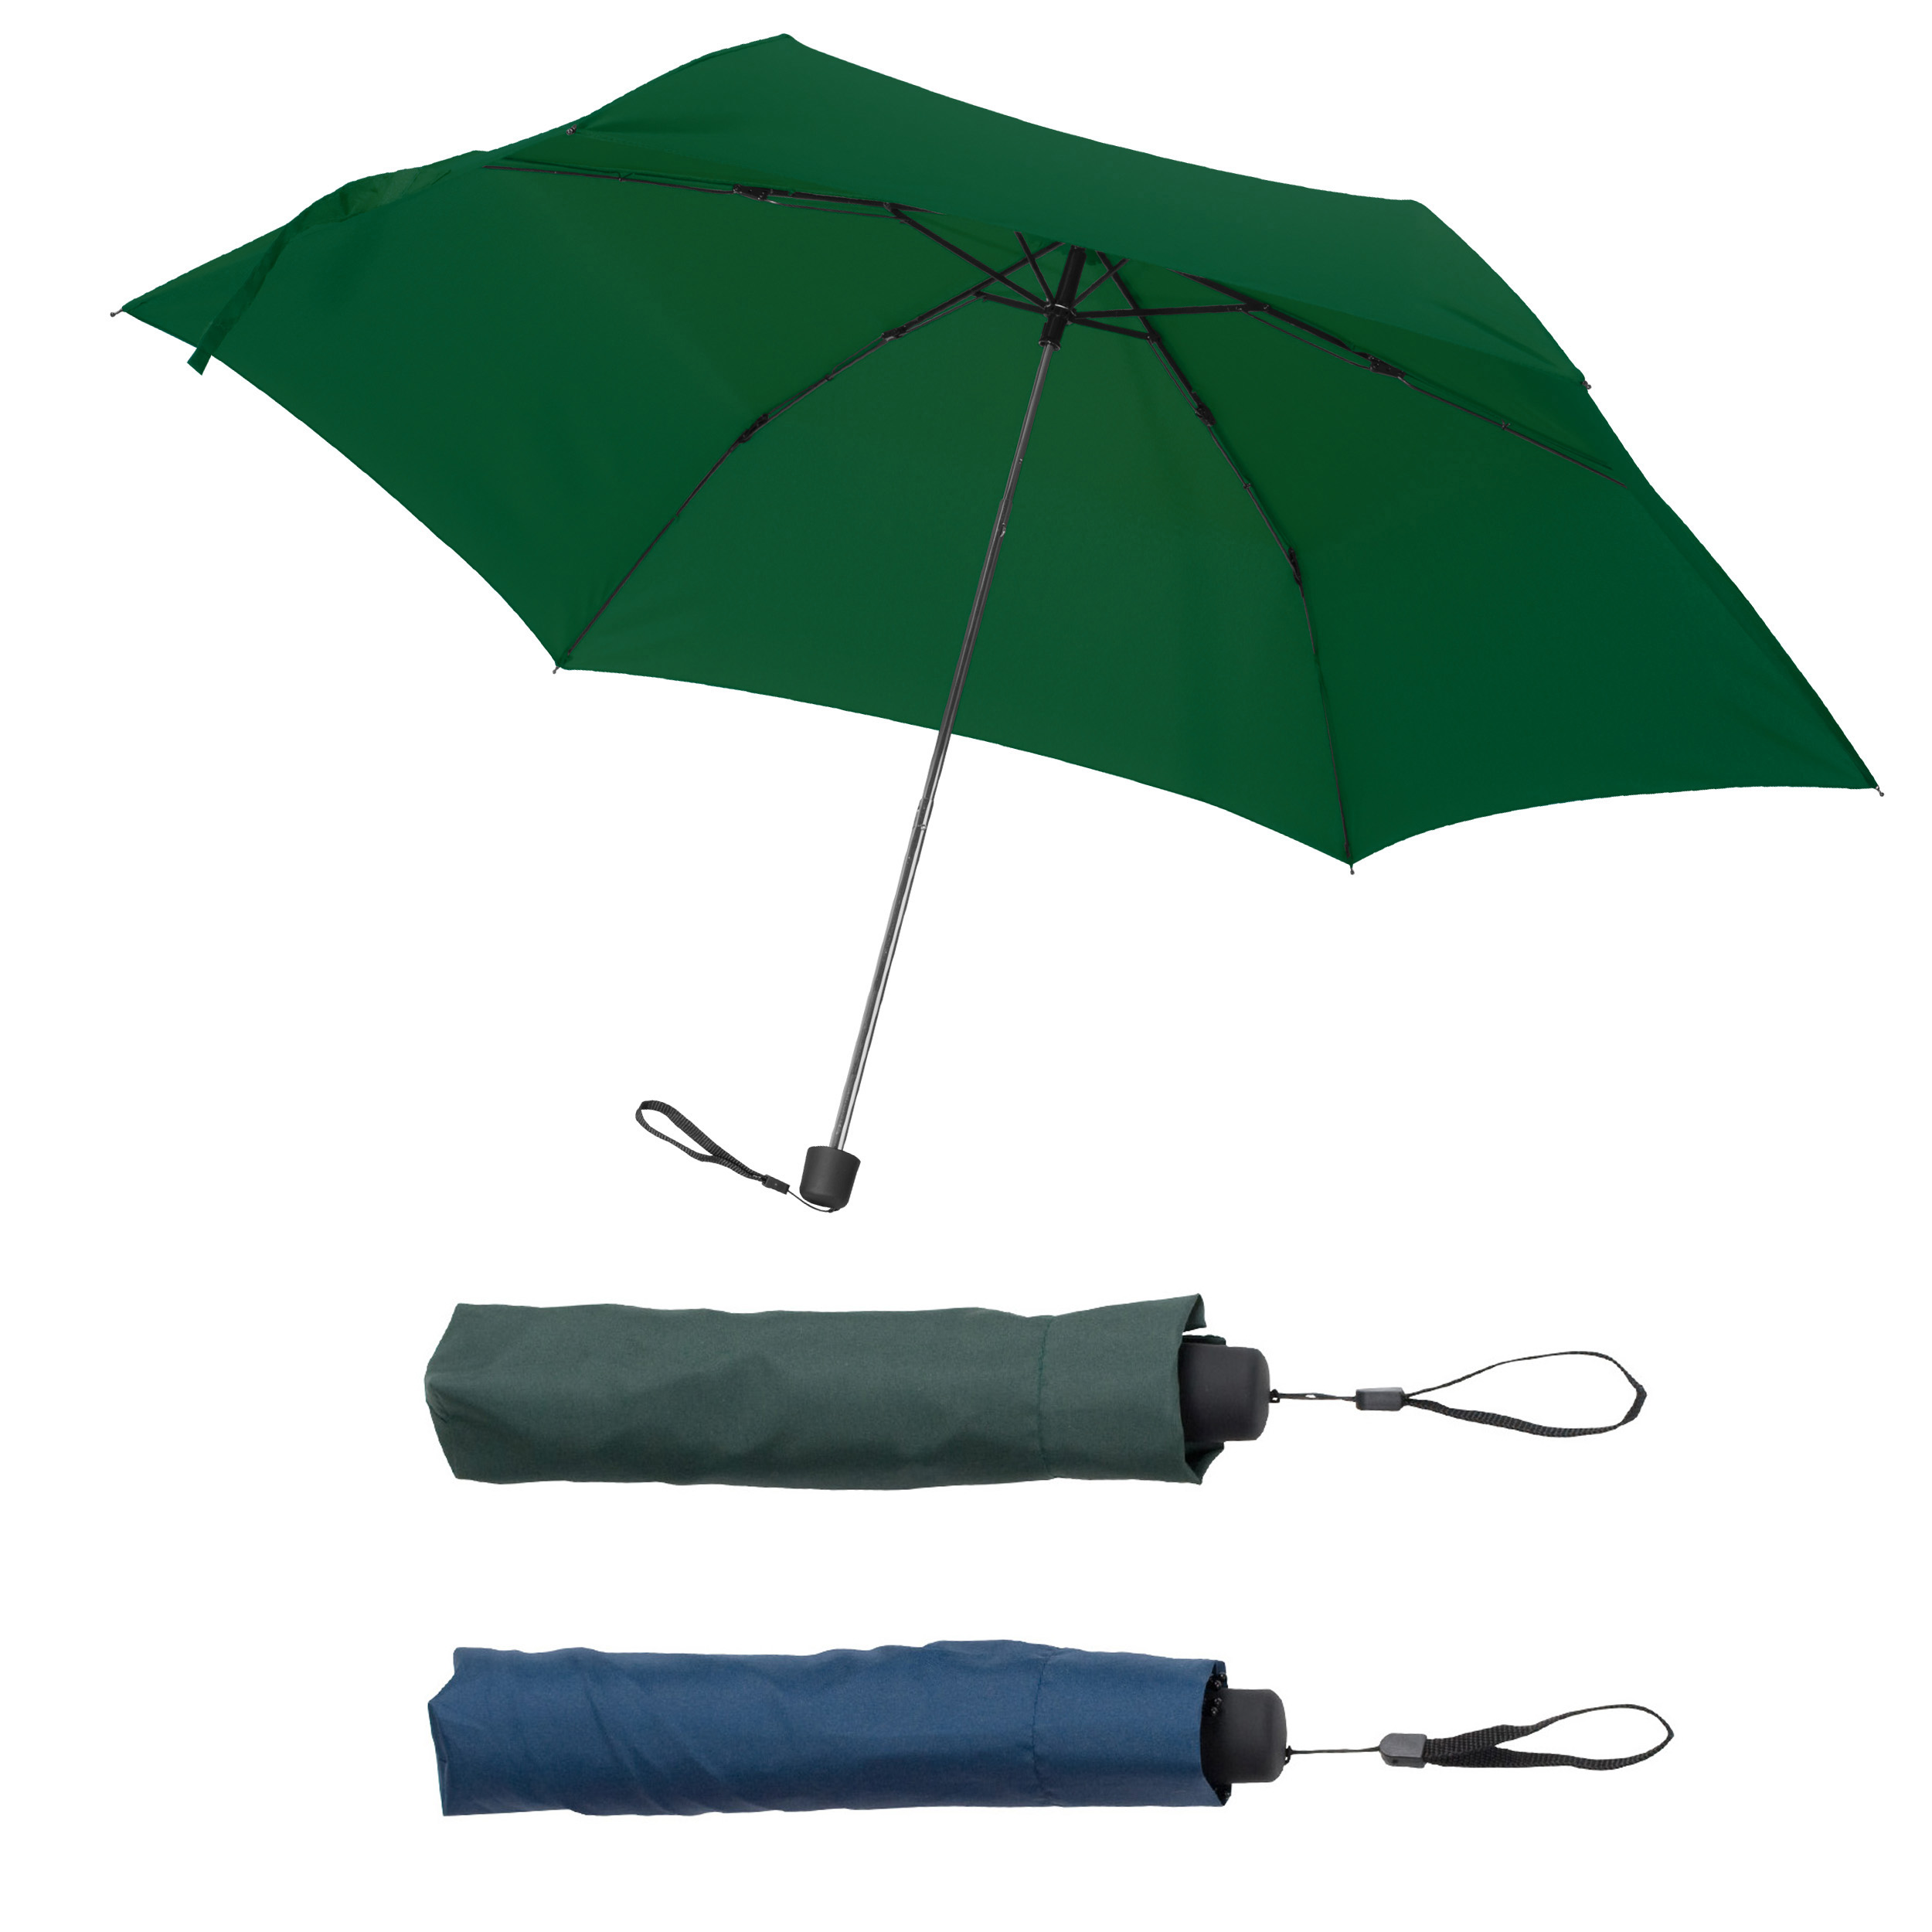 Mini umbrella with protective cover